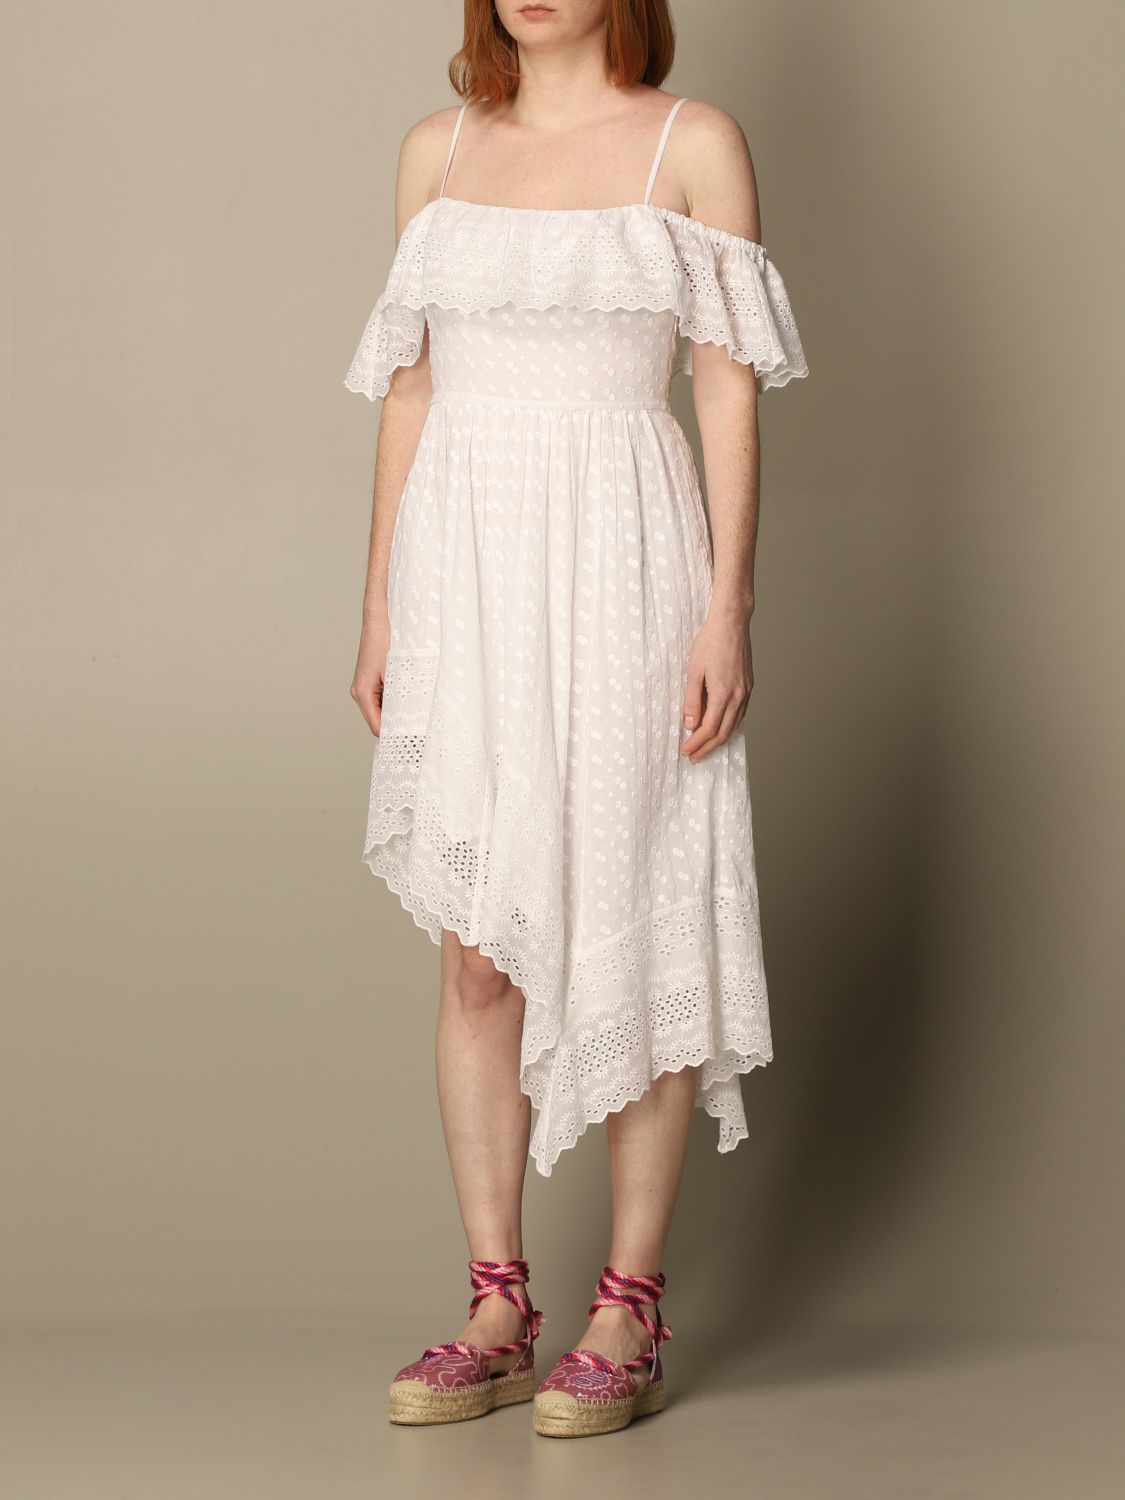 ISABEL MARANT ETOILE: Sangallo dress - White | Isabel Marant Etoile dress online GIGLIO.COM